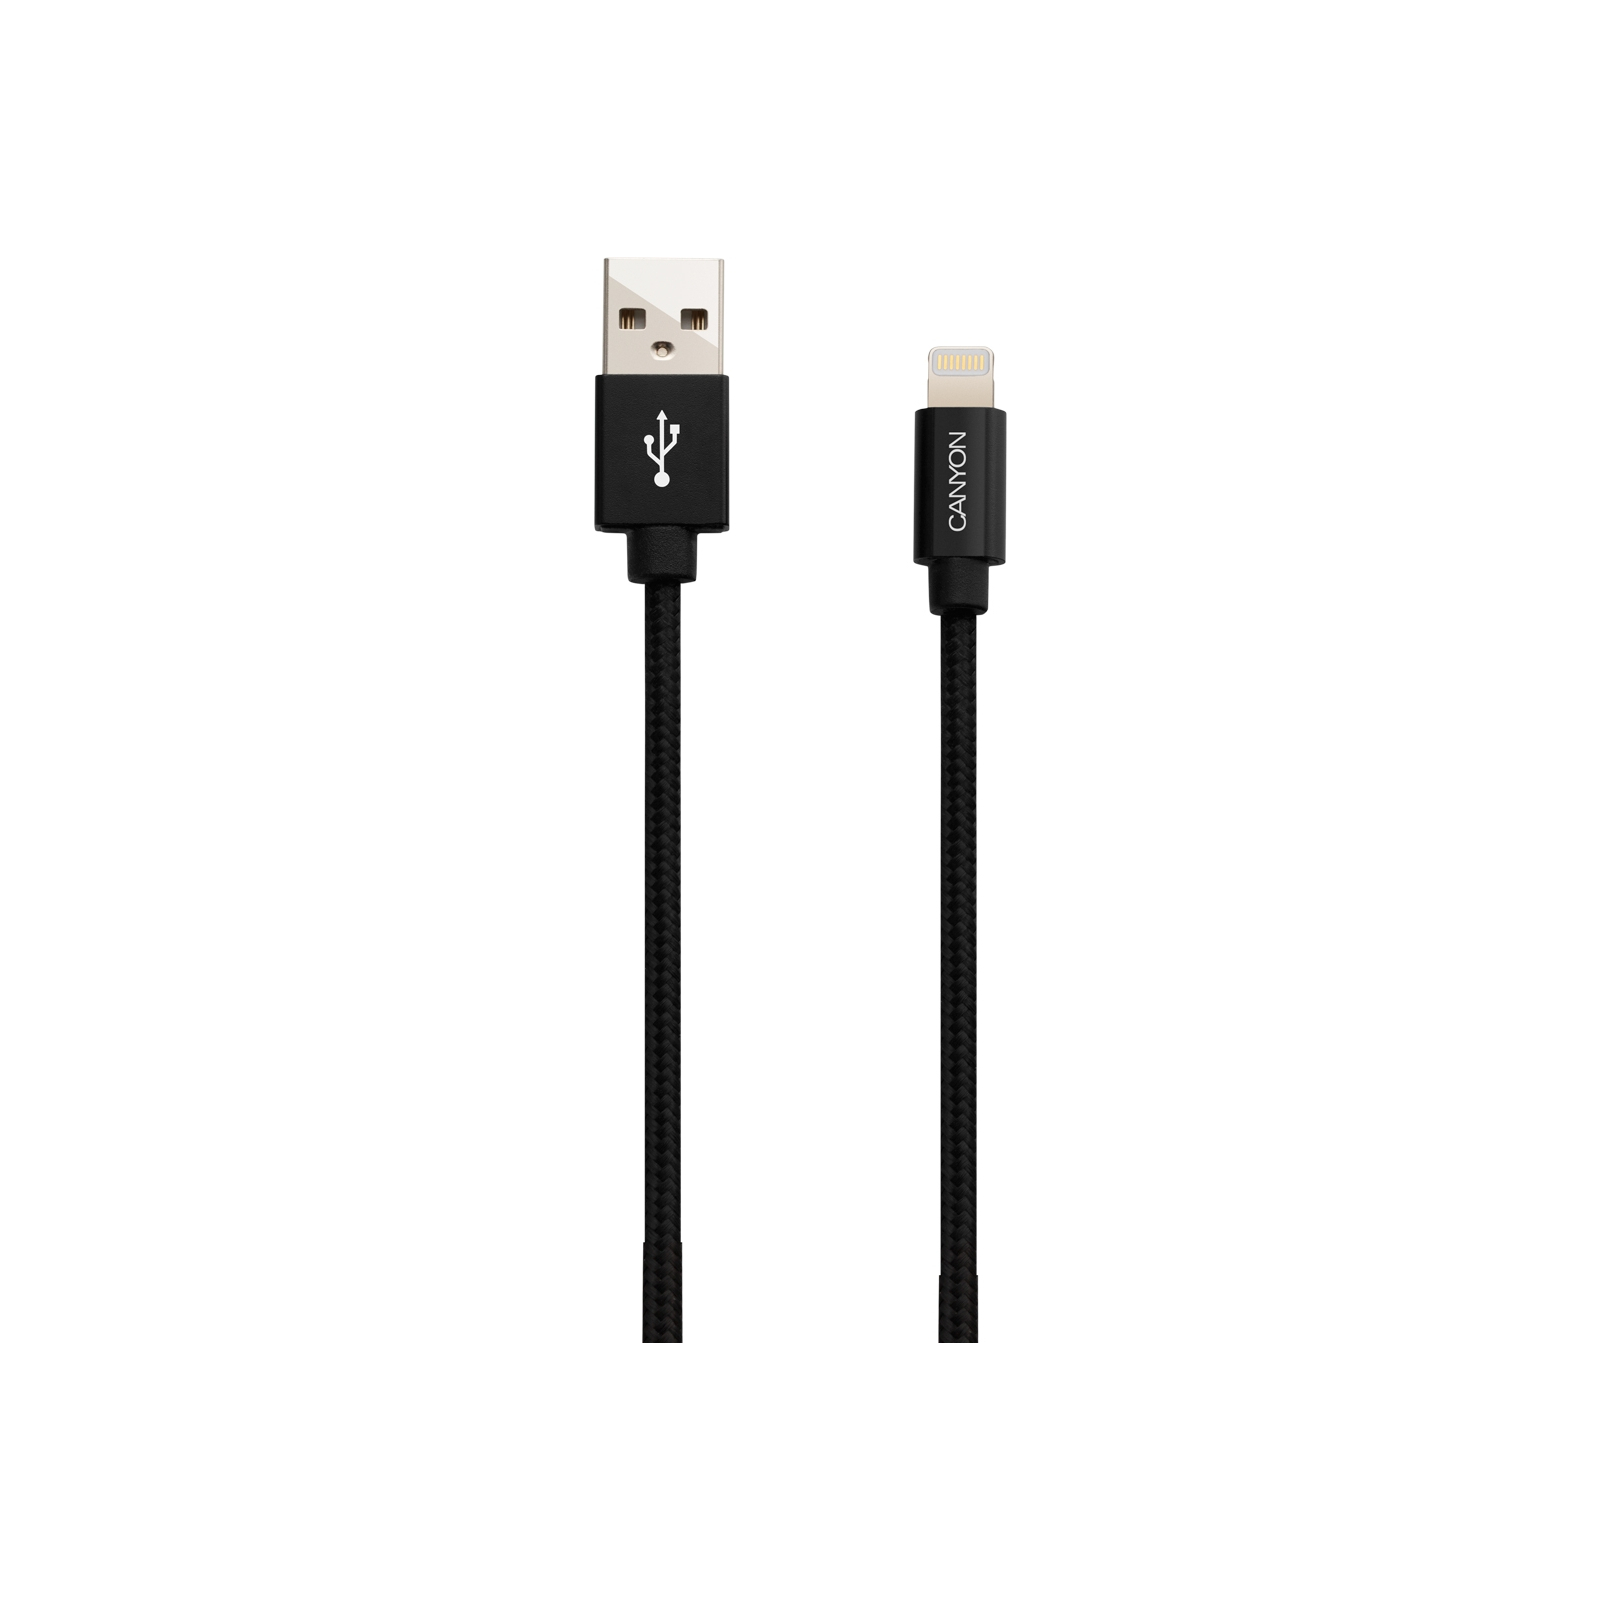 Дата кабель USB 2.0 AM to Lightning 1.0m MFI Dark gray Canyon (CNS-MFIC3DG) изображение 2